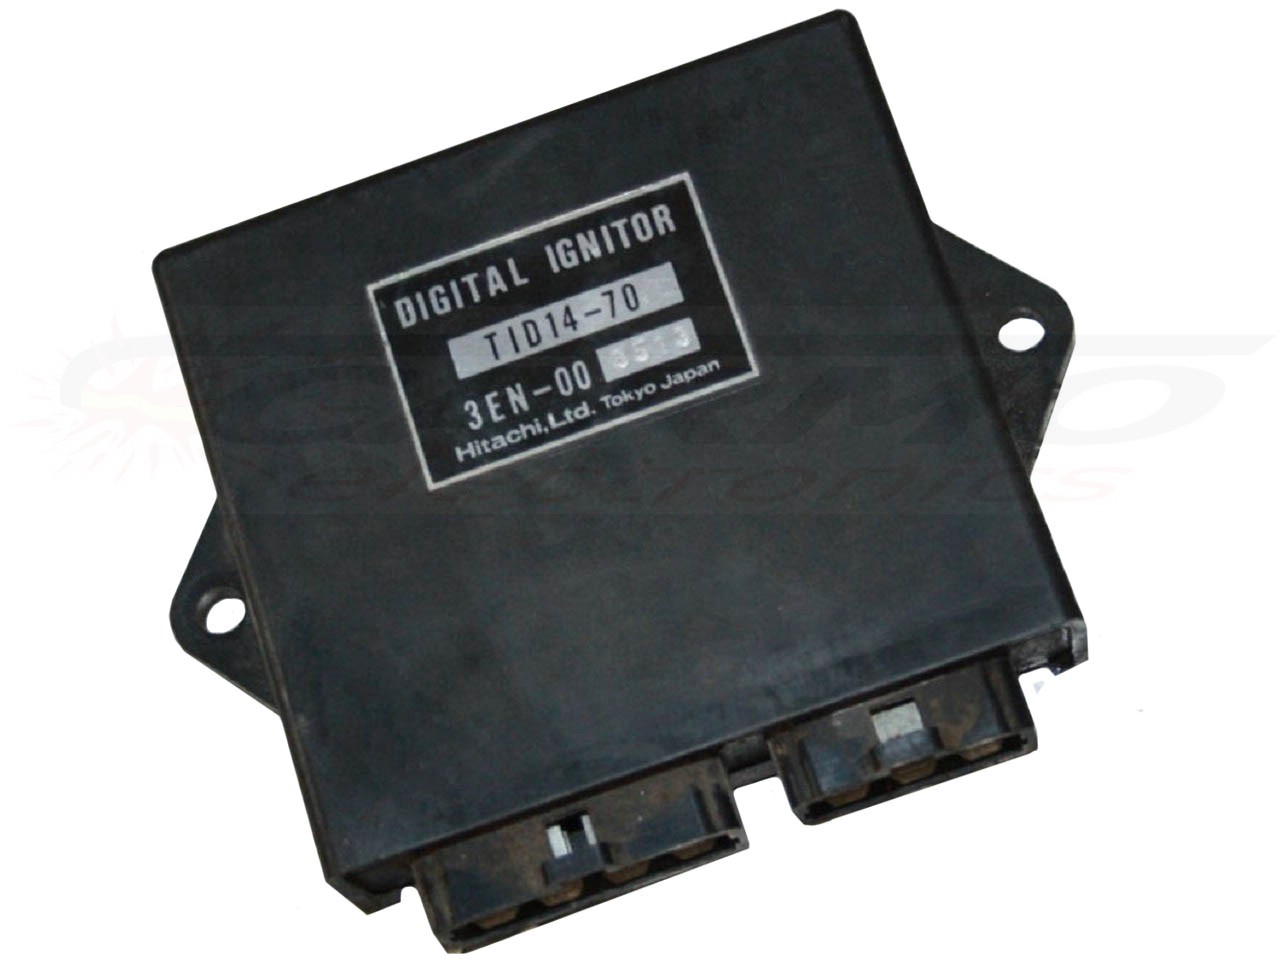 FZR400 Exup ignição / módulo de ignição (TID14-70, 3EN-00)